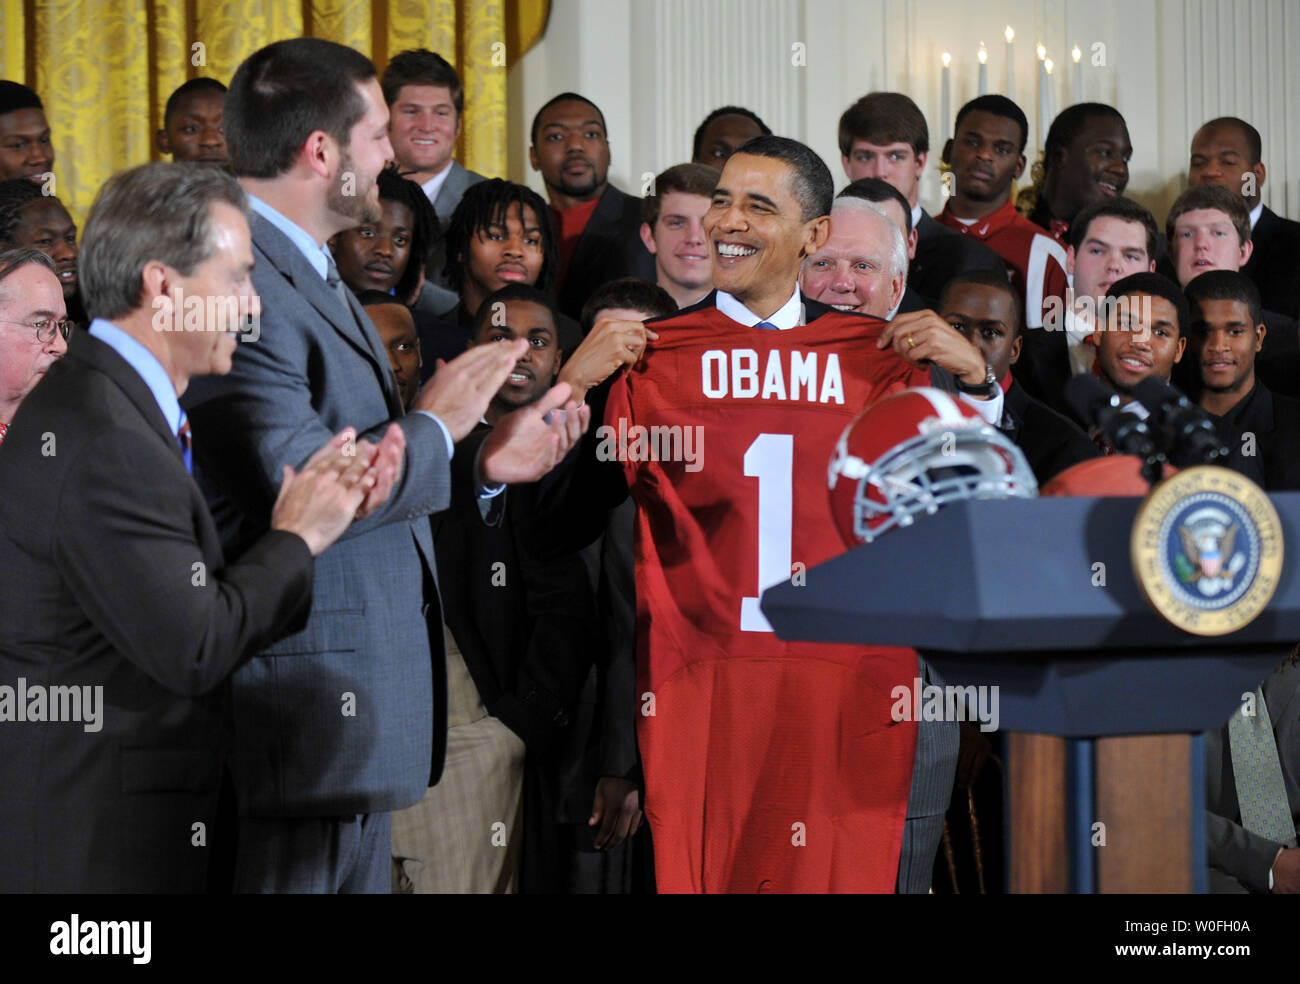 El presidente Barack Obama sostiene una camiseta durante una ceremonia de bienvenida al Campeón Nacional de BCS NCAA Alabama Crimson Tide a la Casa Blanca en Washington el 8 de marzo de 2010. UPI/Kevin Dietsch Foto de stock